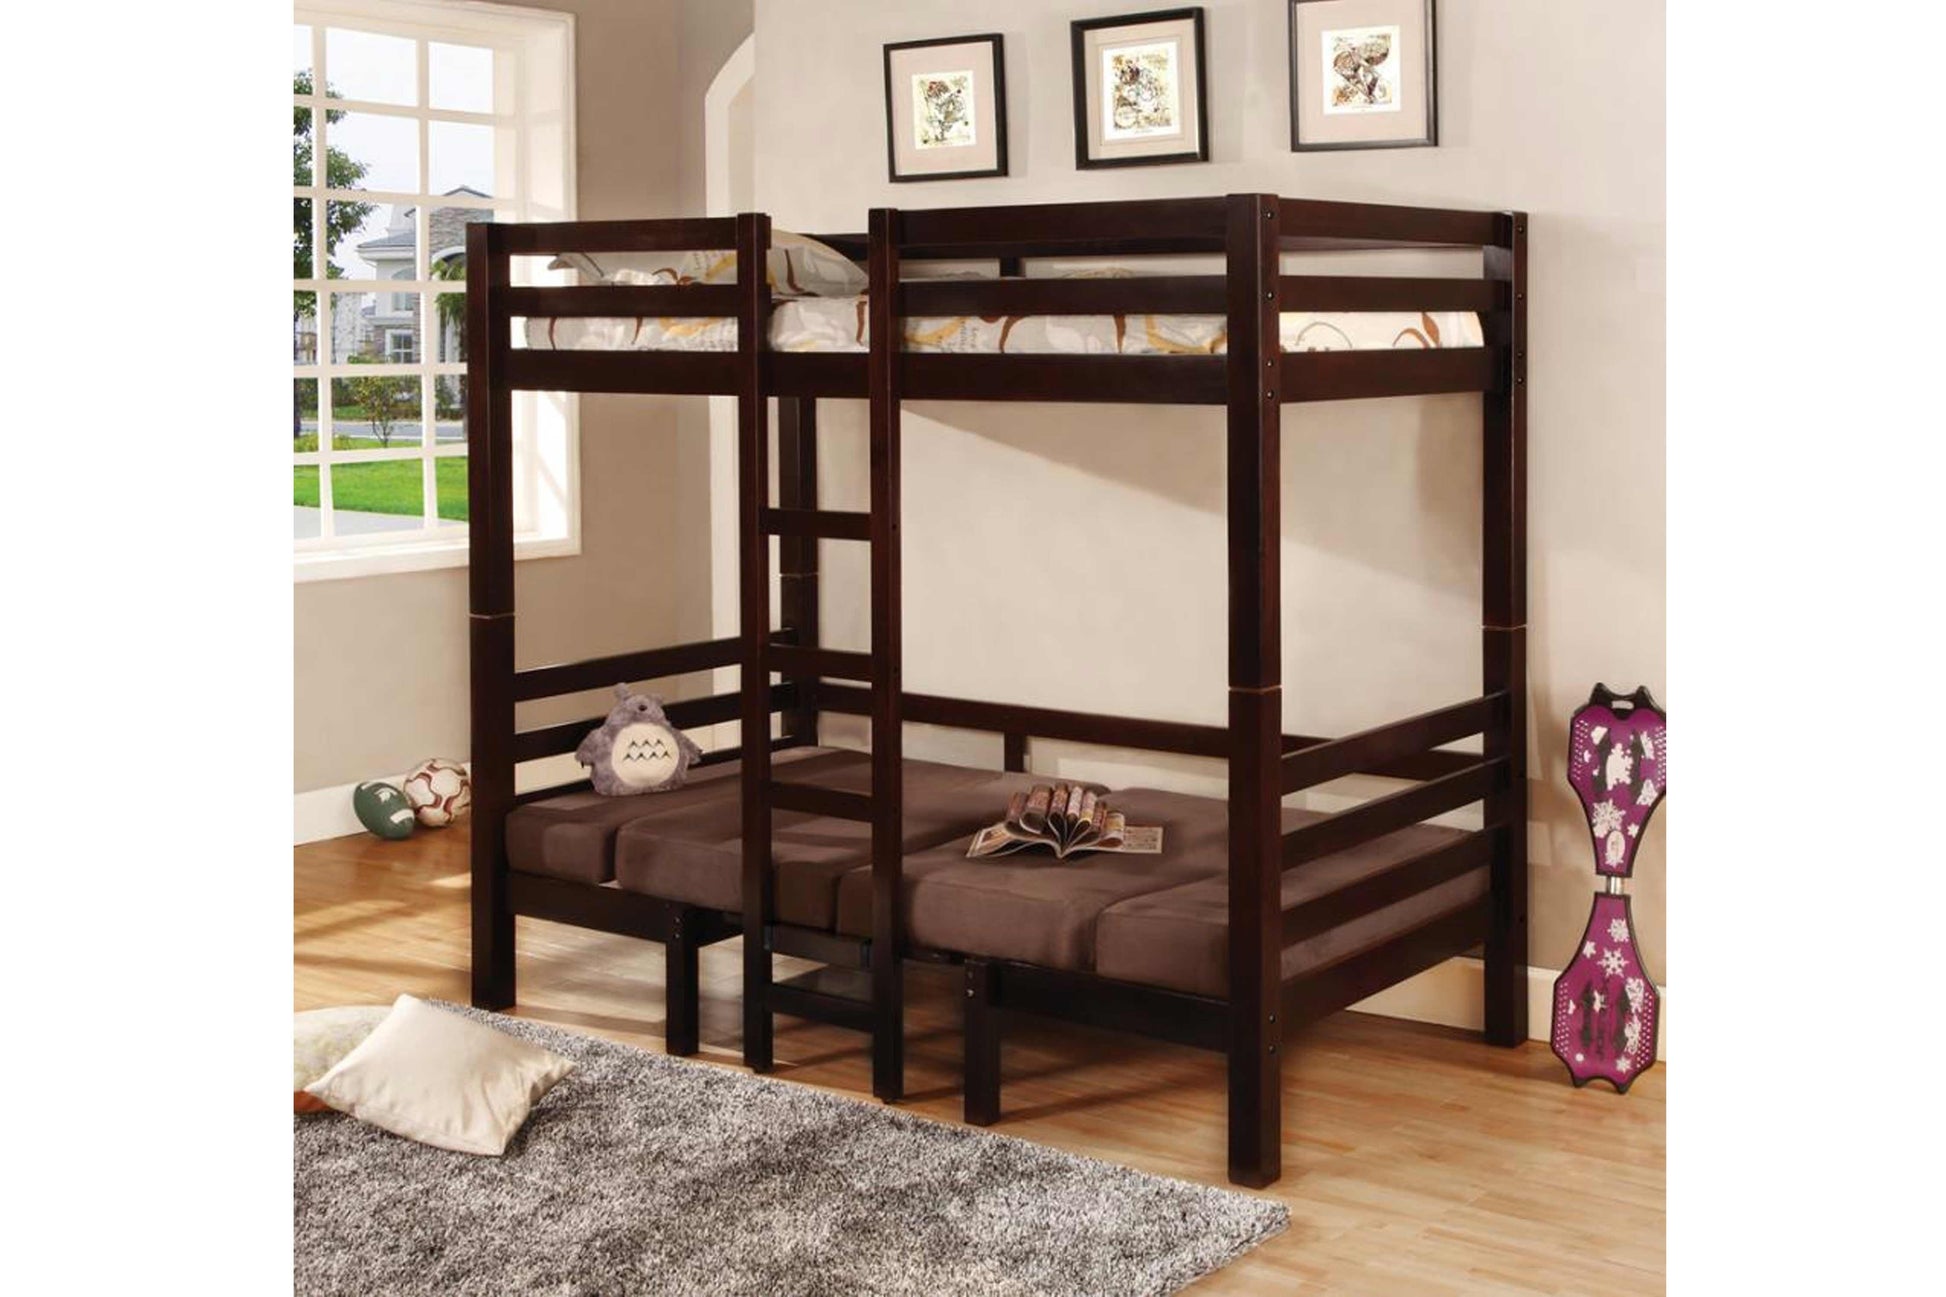 TWIN / TWIN BUNK BED #18460263 - Venini Furniture 